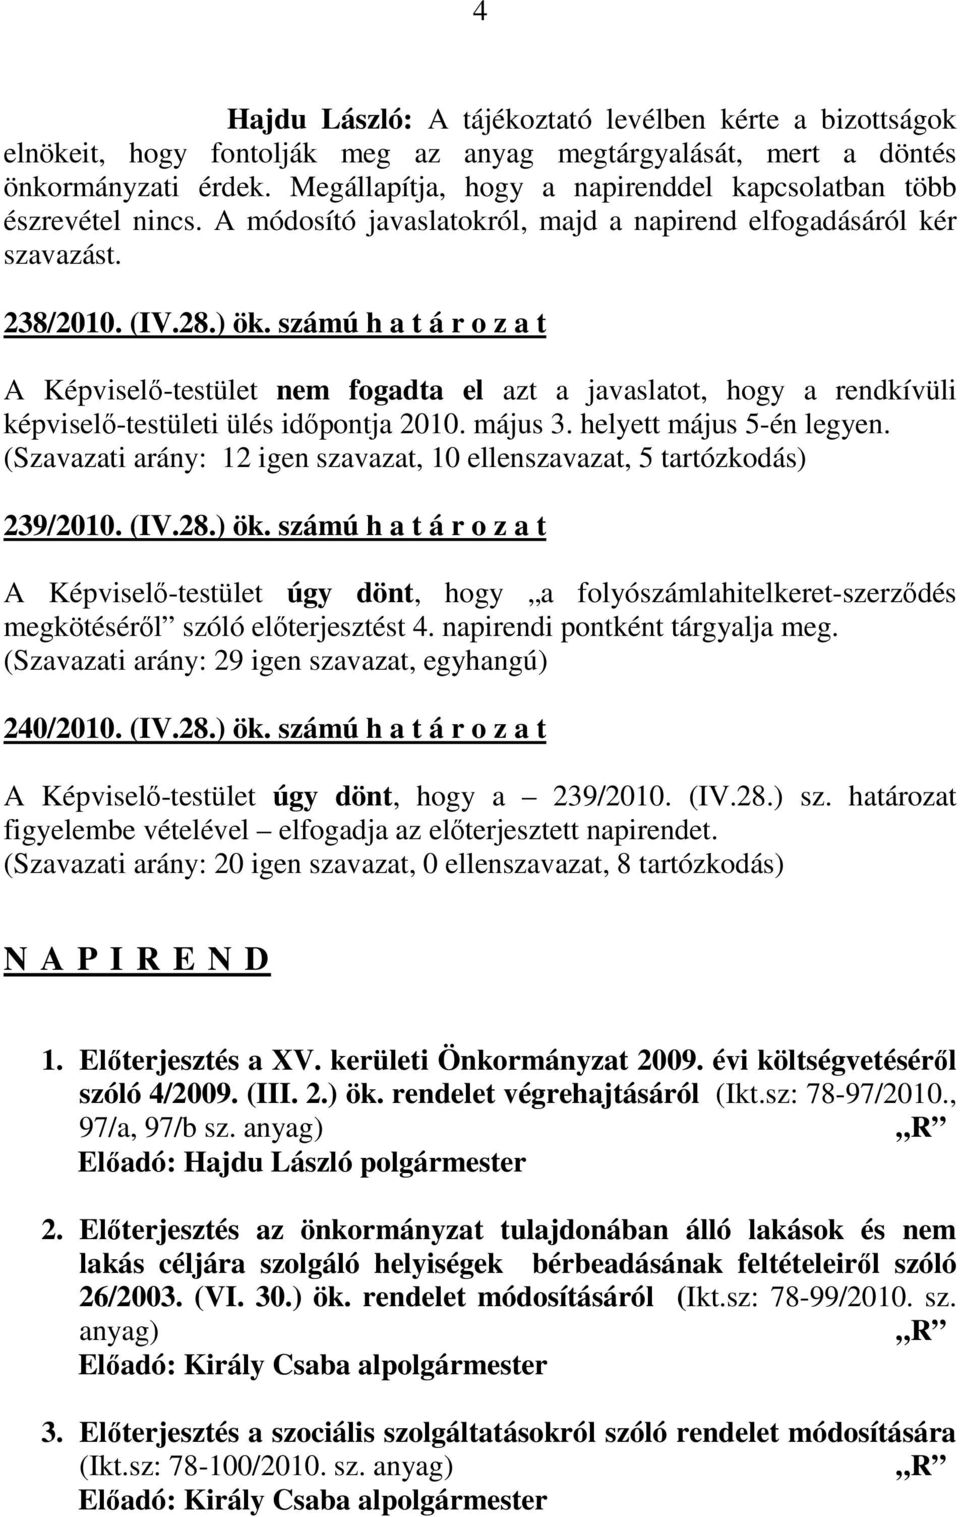 számú h a t á r o z a t A Képviselı-testület nem fogadta el azt a javaslatot, hogy a rendkívüli képviselı-testületi ülés idıpontja 2010. május 3. helyett május 5-én legyen.